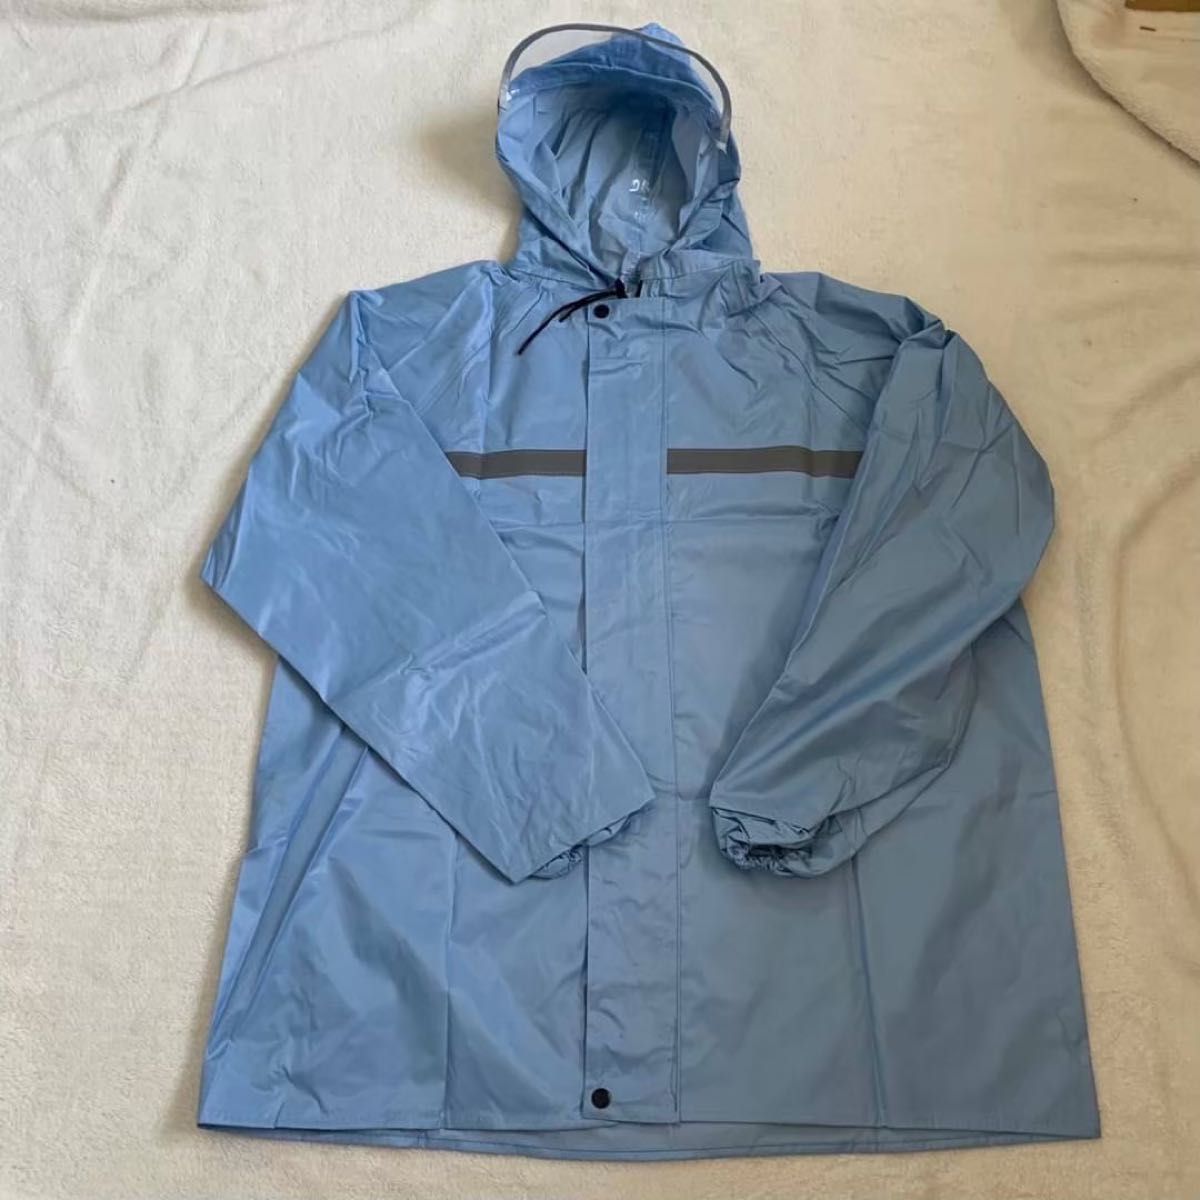 XL ブルー レインコート ジャケット 男女兼用 雨具 撥水 カッパ 強風 梅雨 上着 反射板 ツバ付き 通勤 通学 作業服